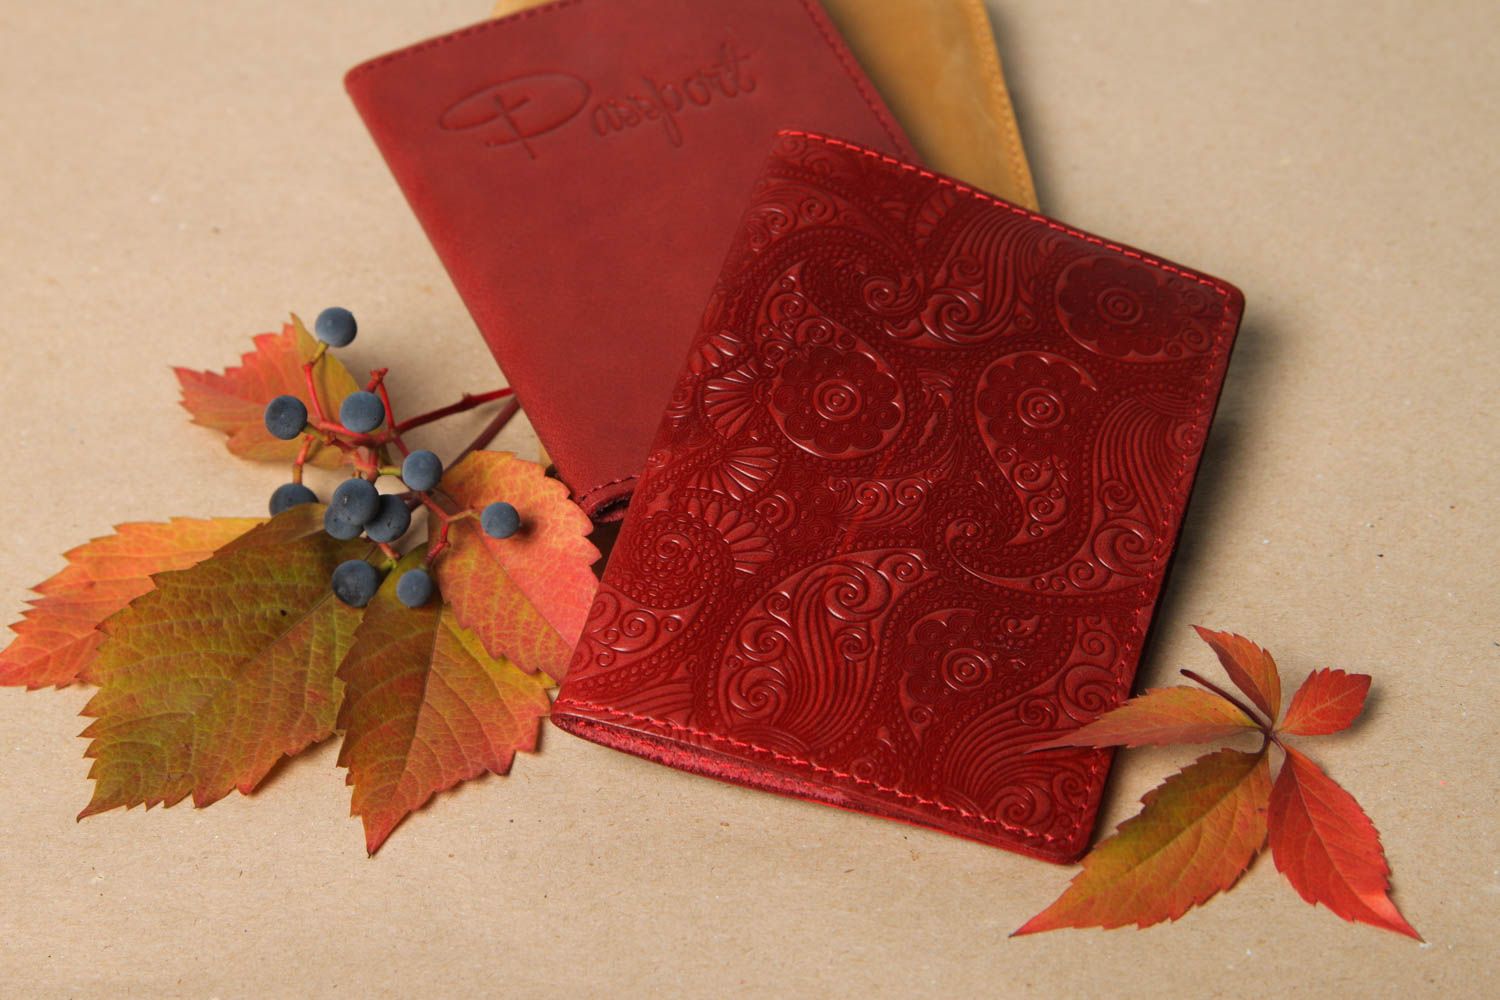 Оригинальный подарок хенд мейд аксессуар из кожи красная обложка на паспорт фото 1